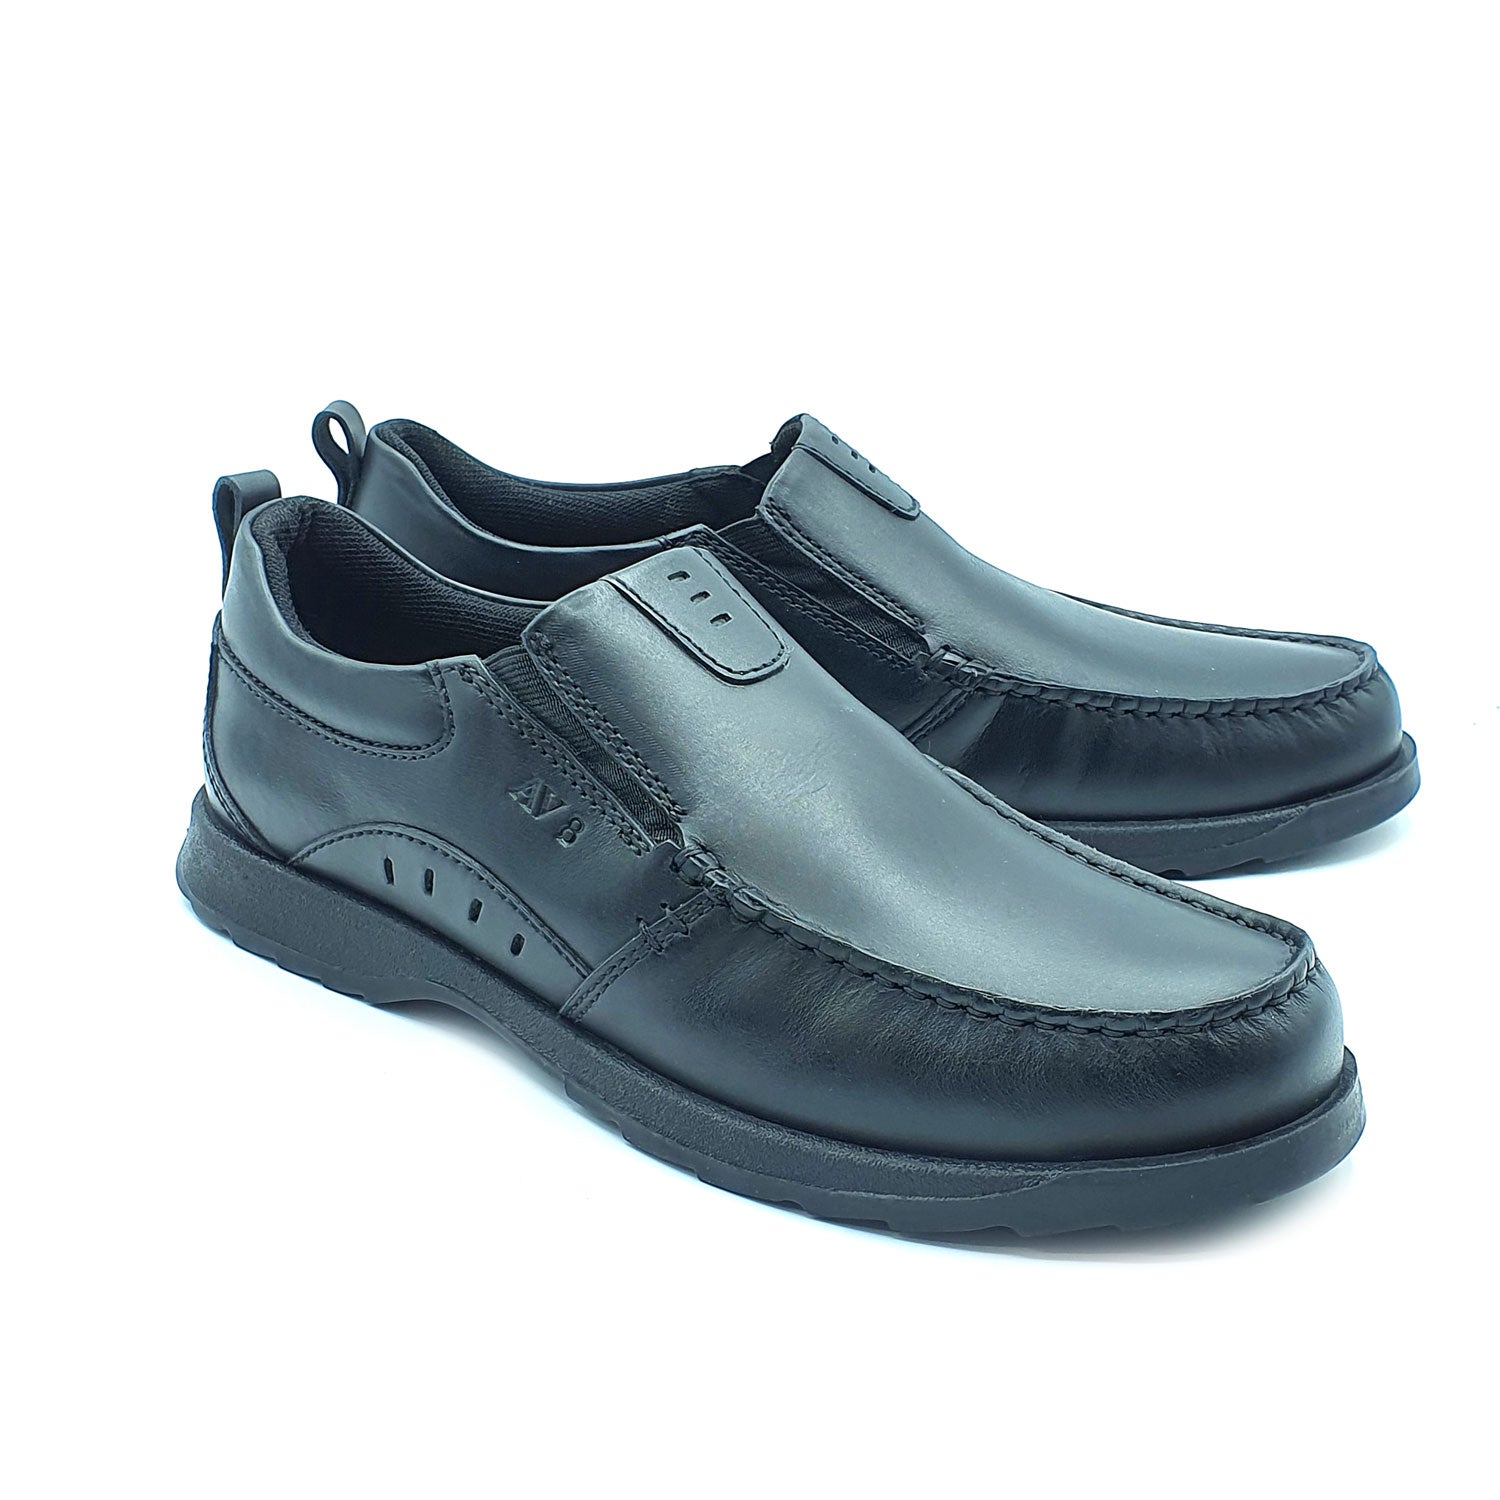 Dubarry Karter Slip On Av8 Shoe - Black 1 Shaws Department Stores